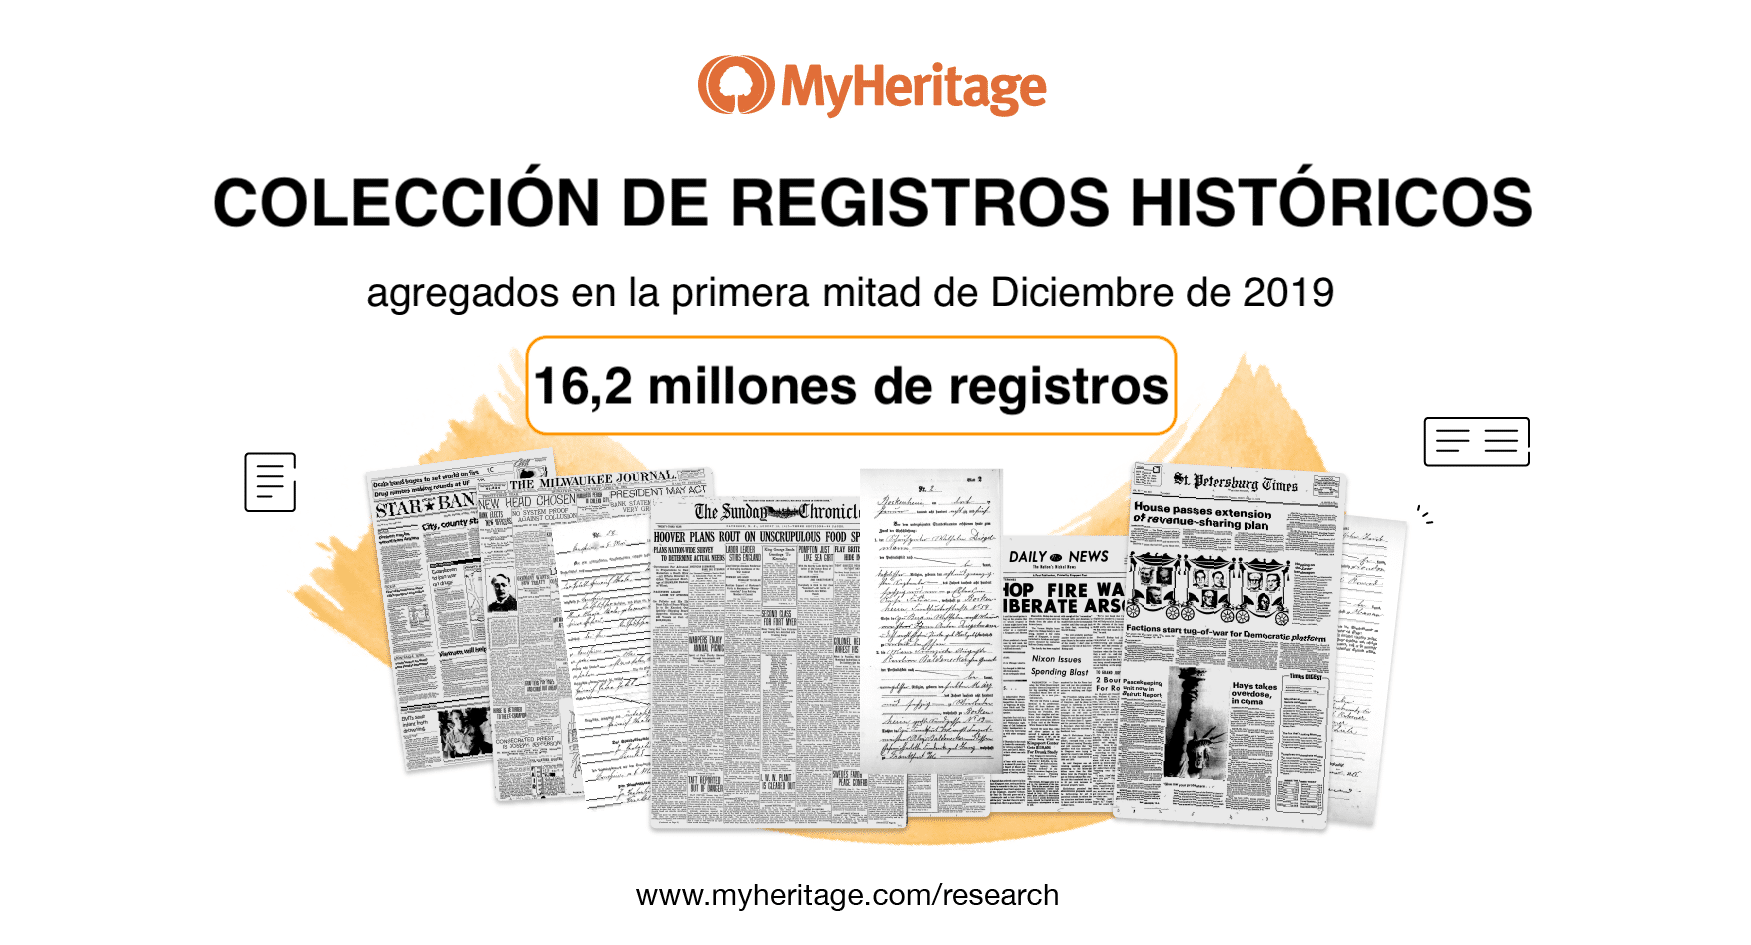 Colecciones de Registros Históricos Añadidas en la Primera Mitad de Diciembre